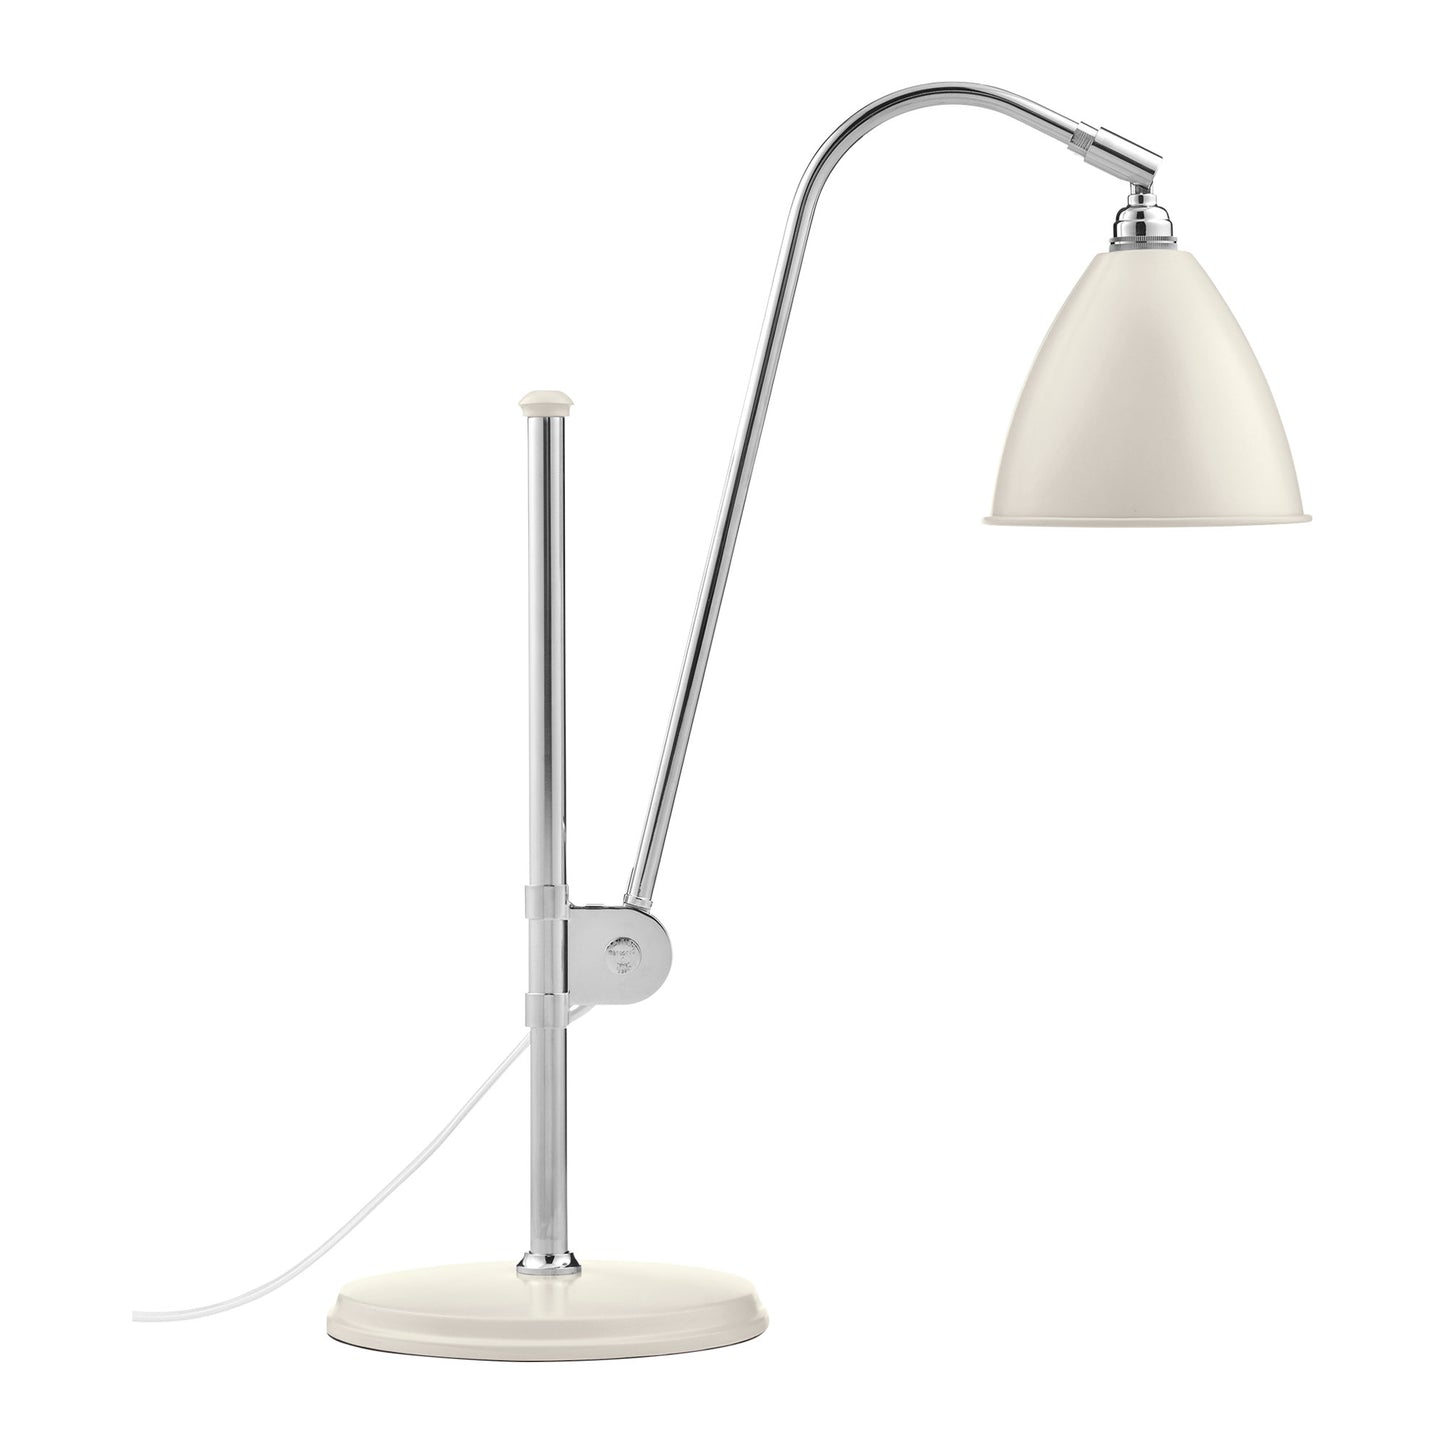 Bestlite BL1 Table Lamp by GUBI #Chrome / Matte white